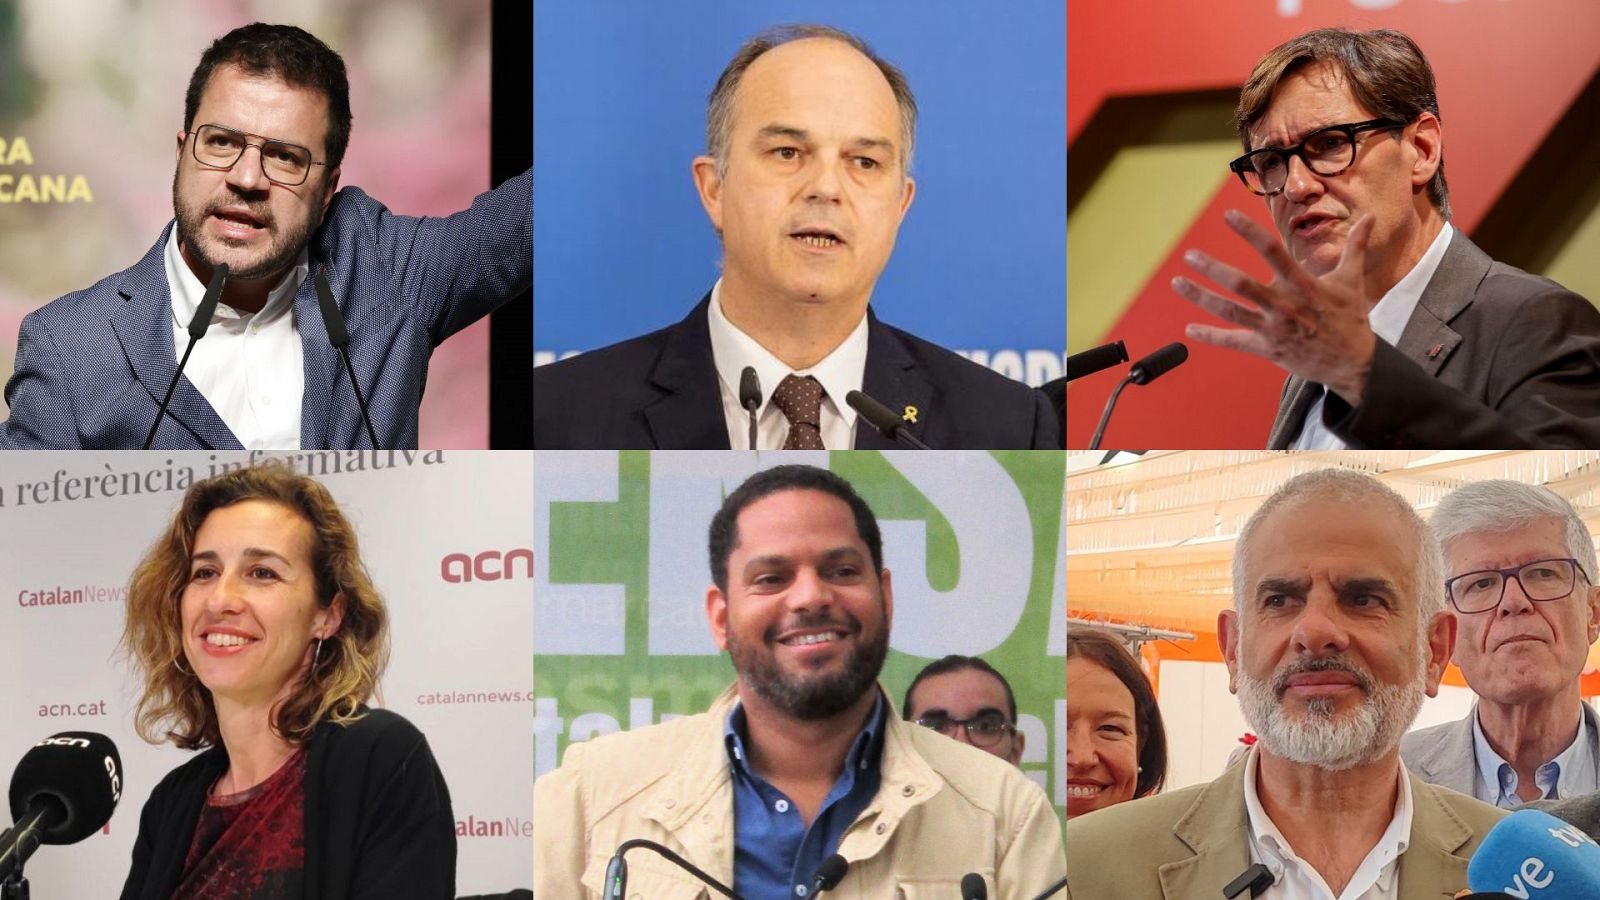 La campaña catalana coge fuerza en pleno debate sobre la regeneración democrática